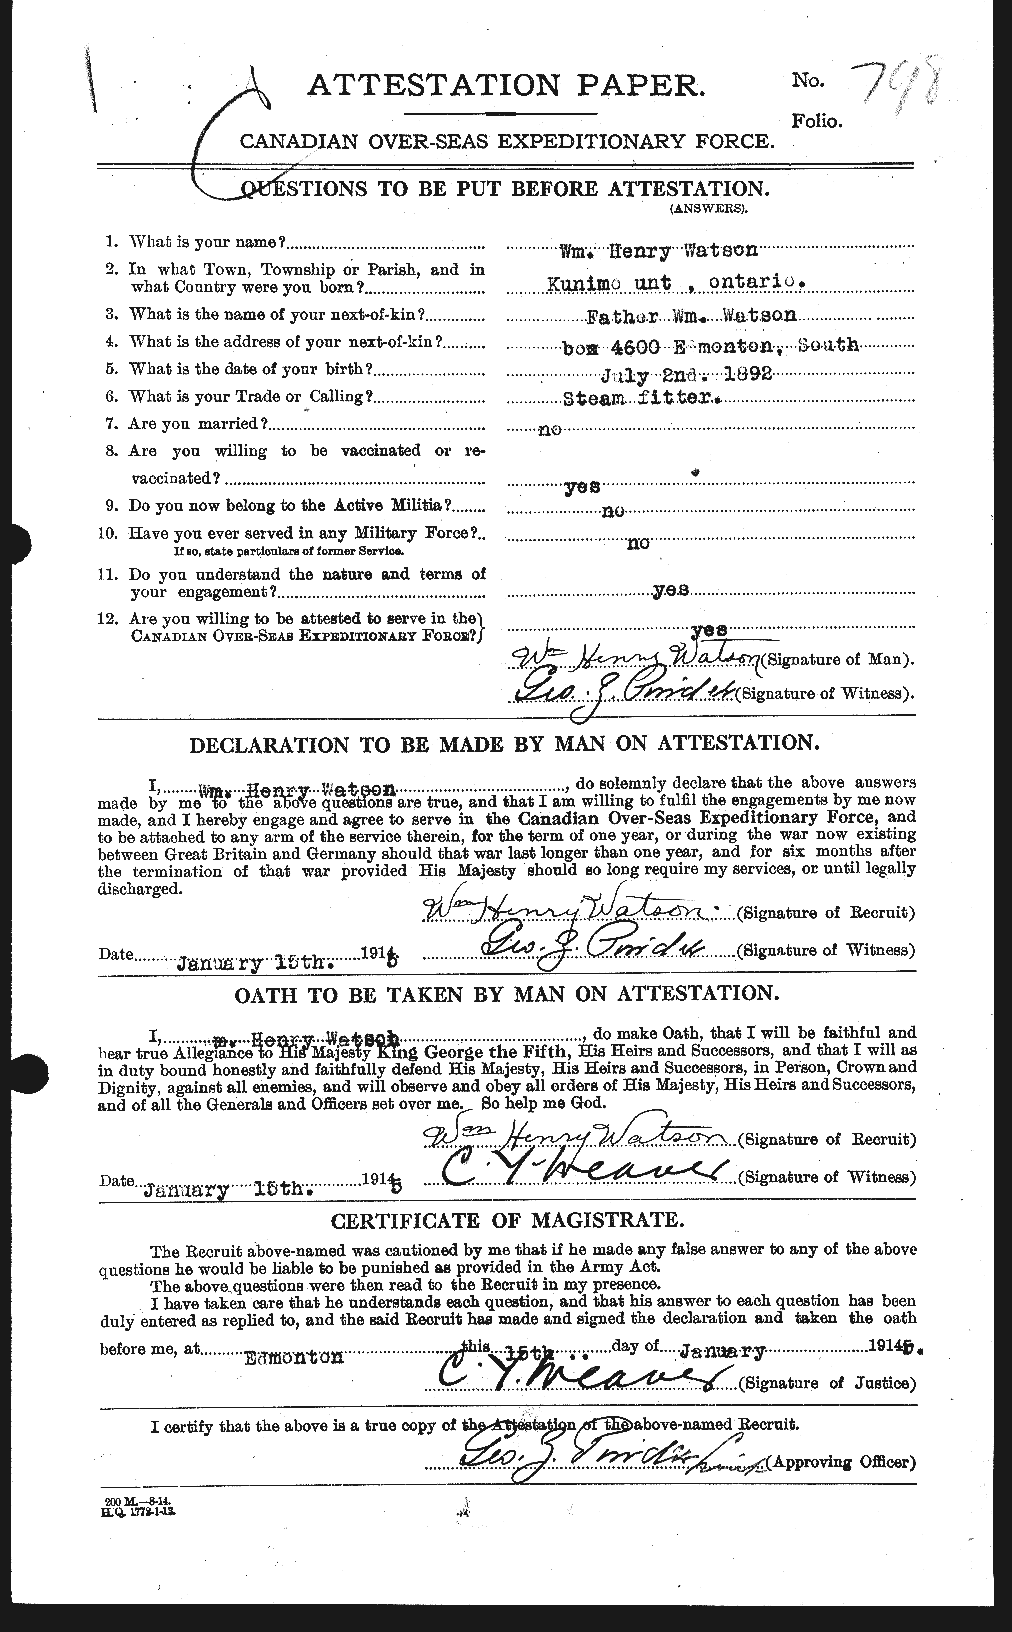 Dossiers du Personnel de la Première Guerre mondiale - CEC 664311a